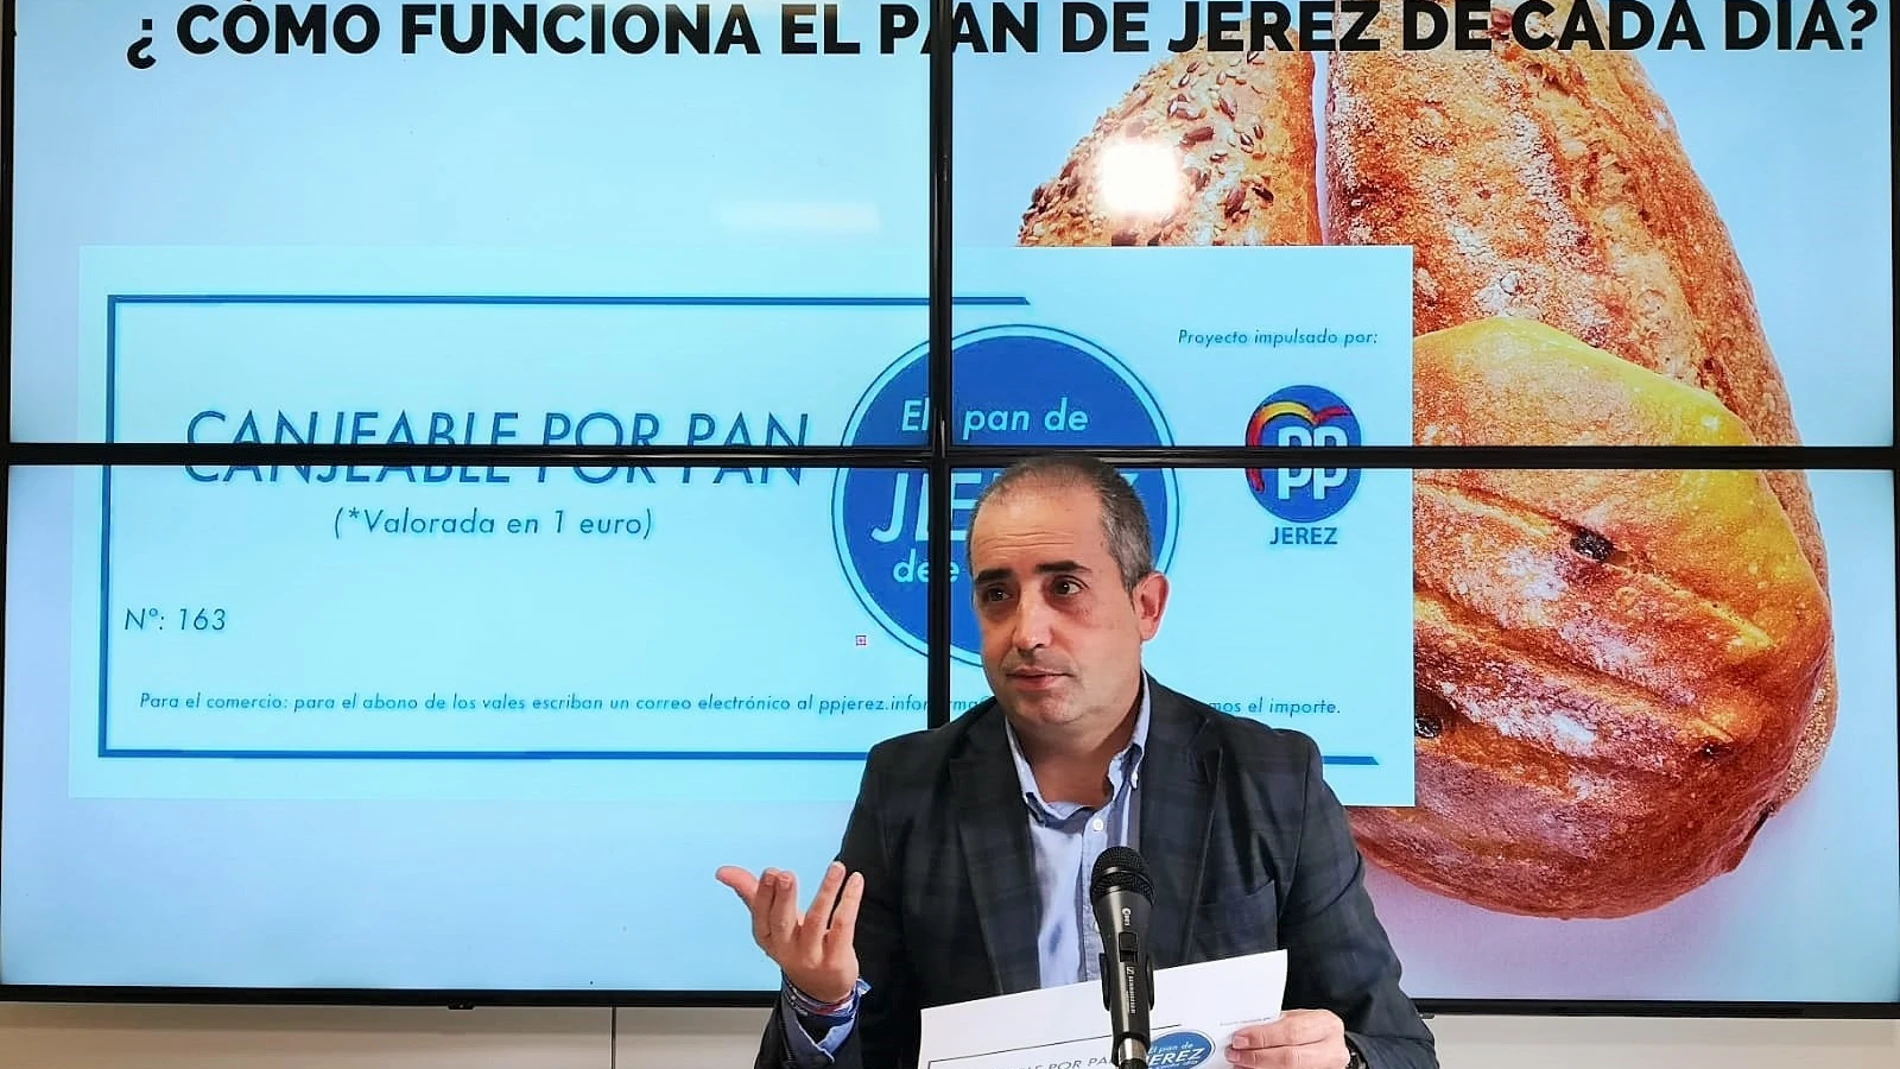 Cádiz.-Coronavirus.- PP pone en marcha 'El pan de Jerez de cada día' para ayudar a las familias más vulnerables